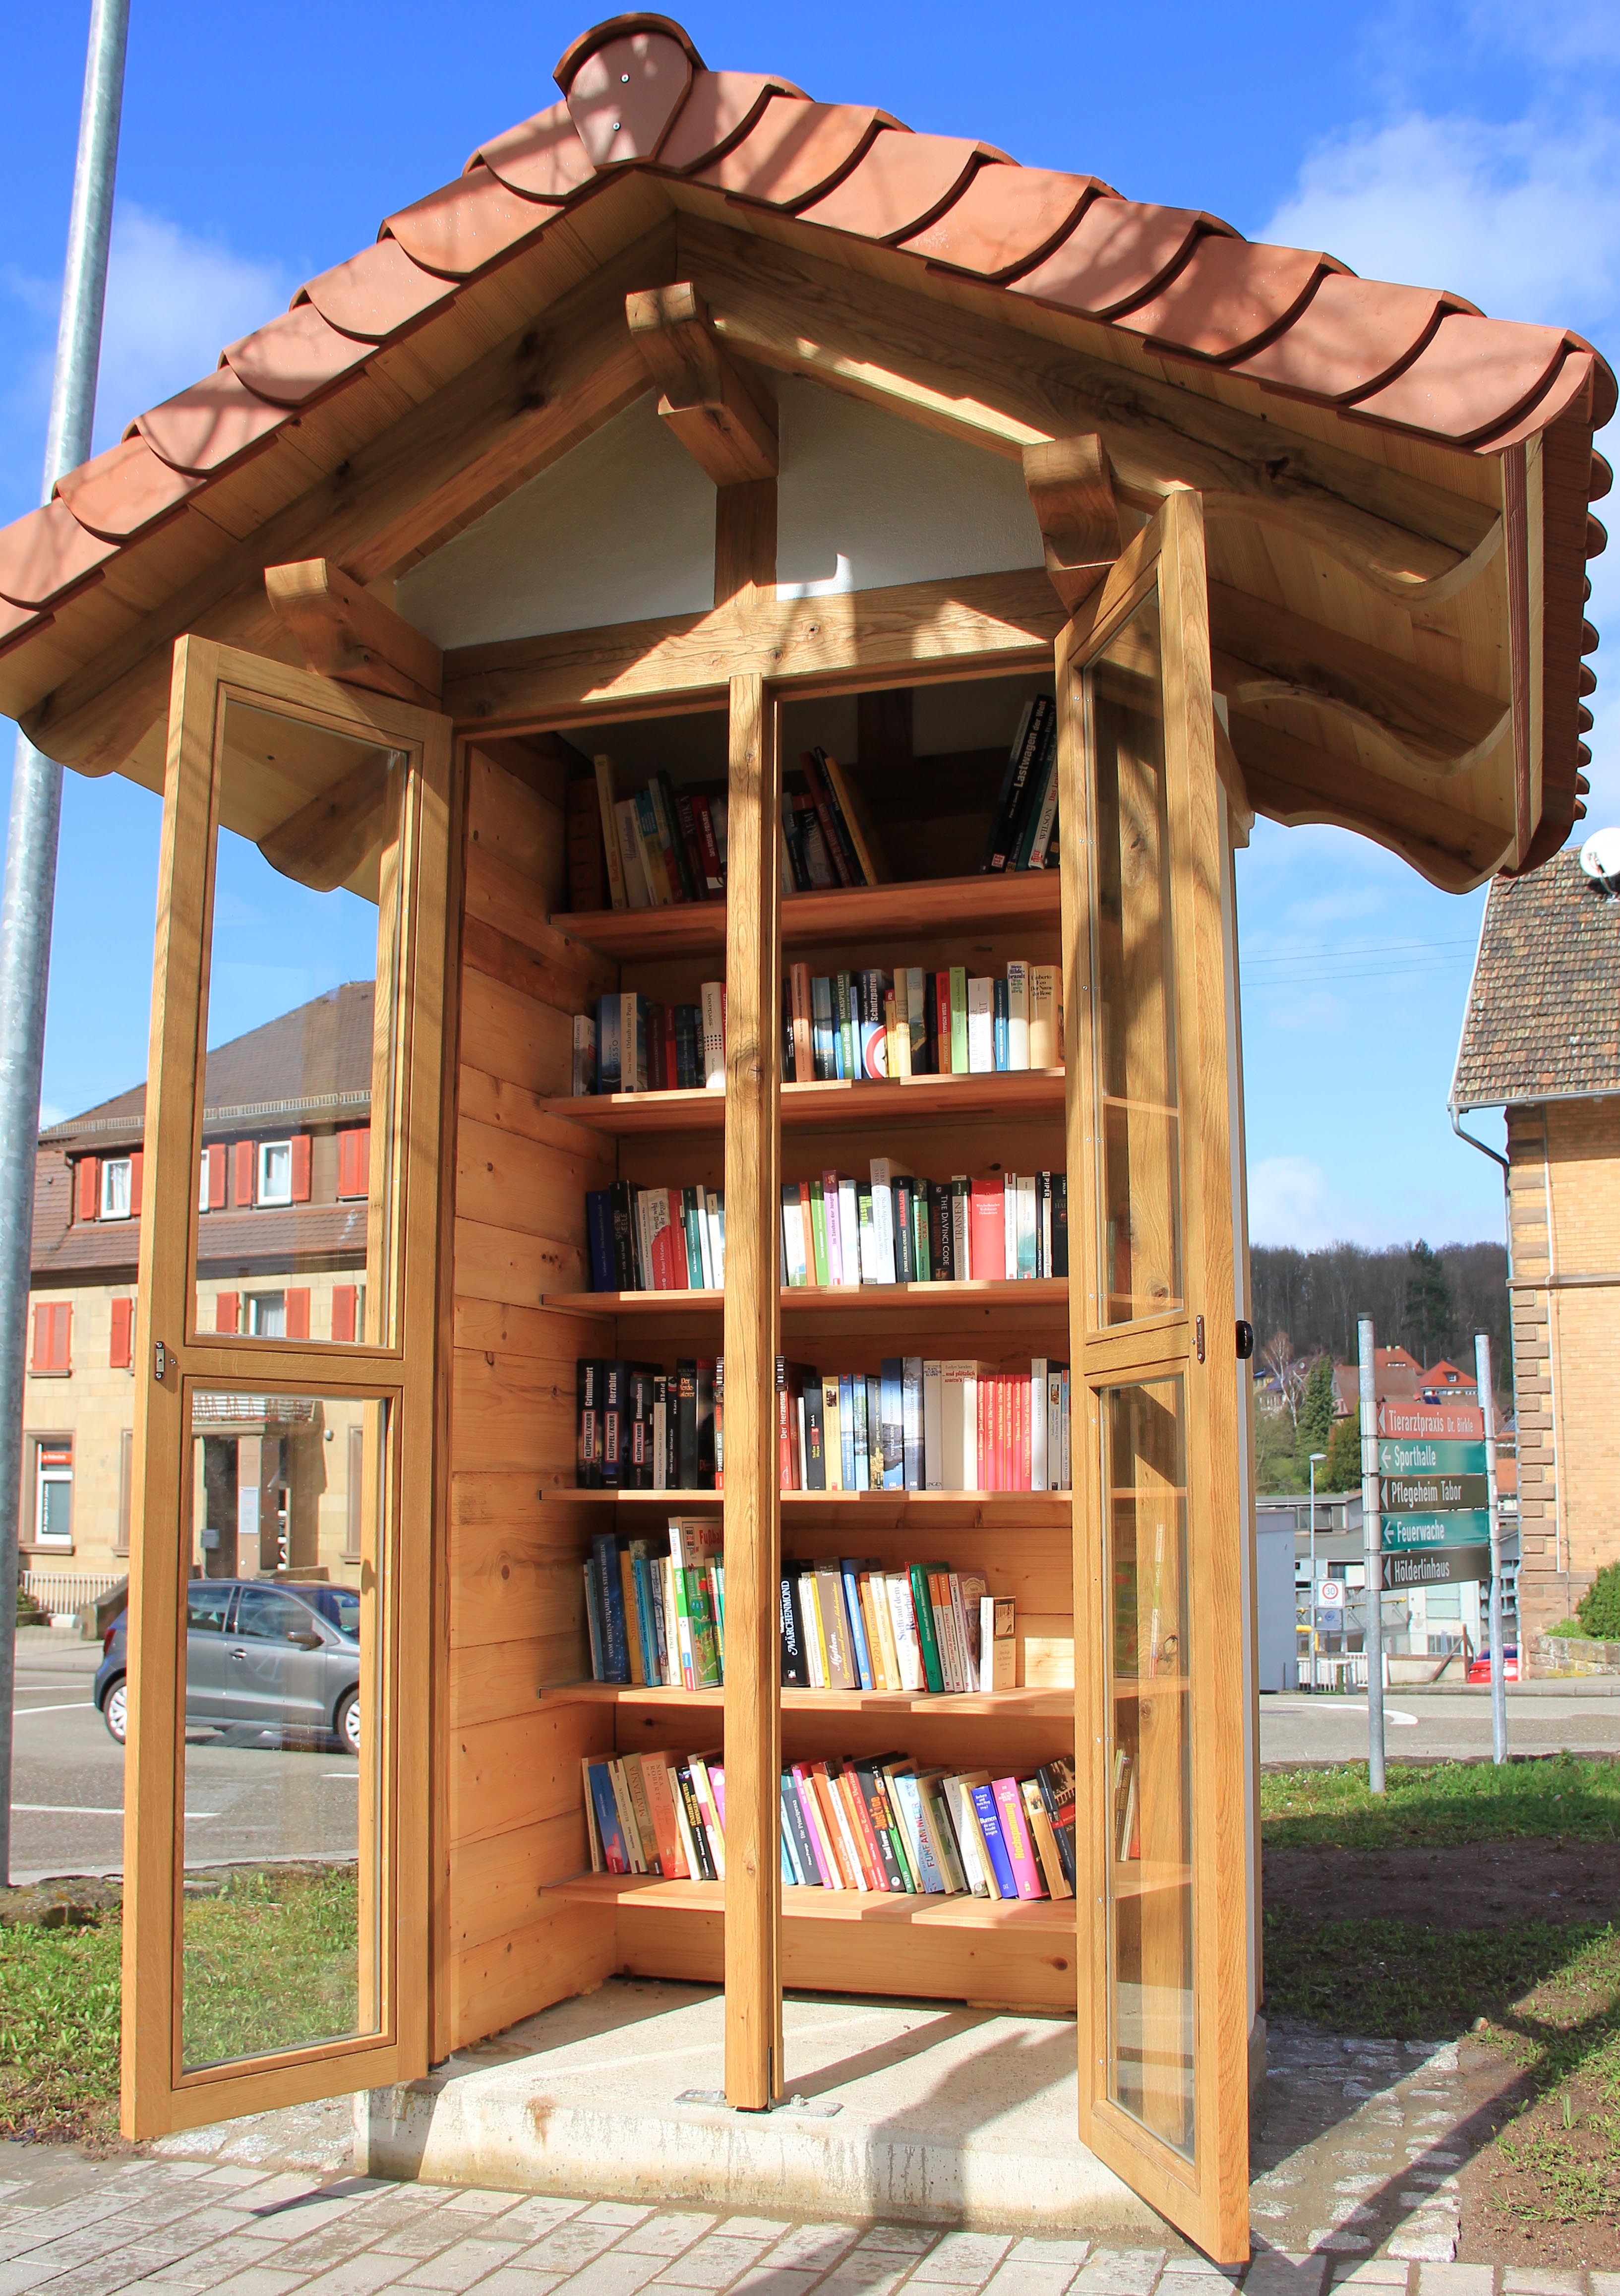 öffenlicher Bücherschrank in der Gestalt eines kleinen Fachwerkhauses, gefüllt mit Büchern